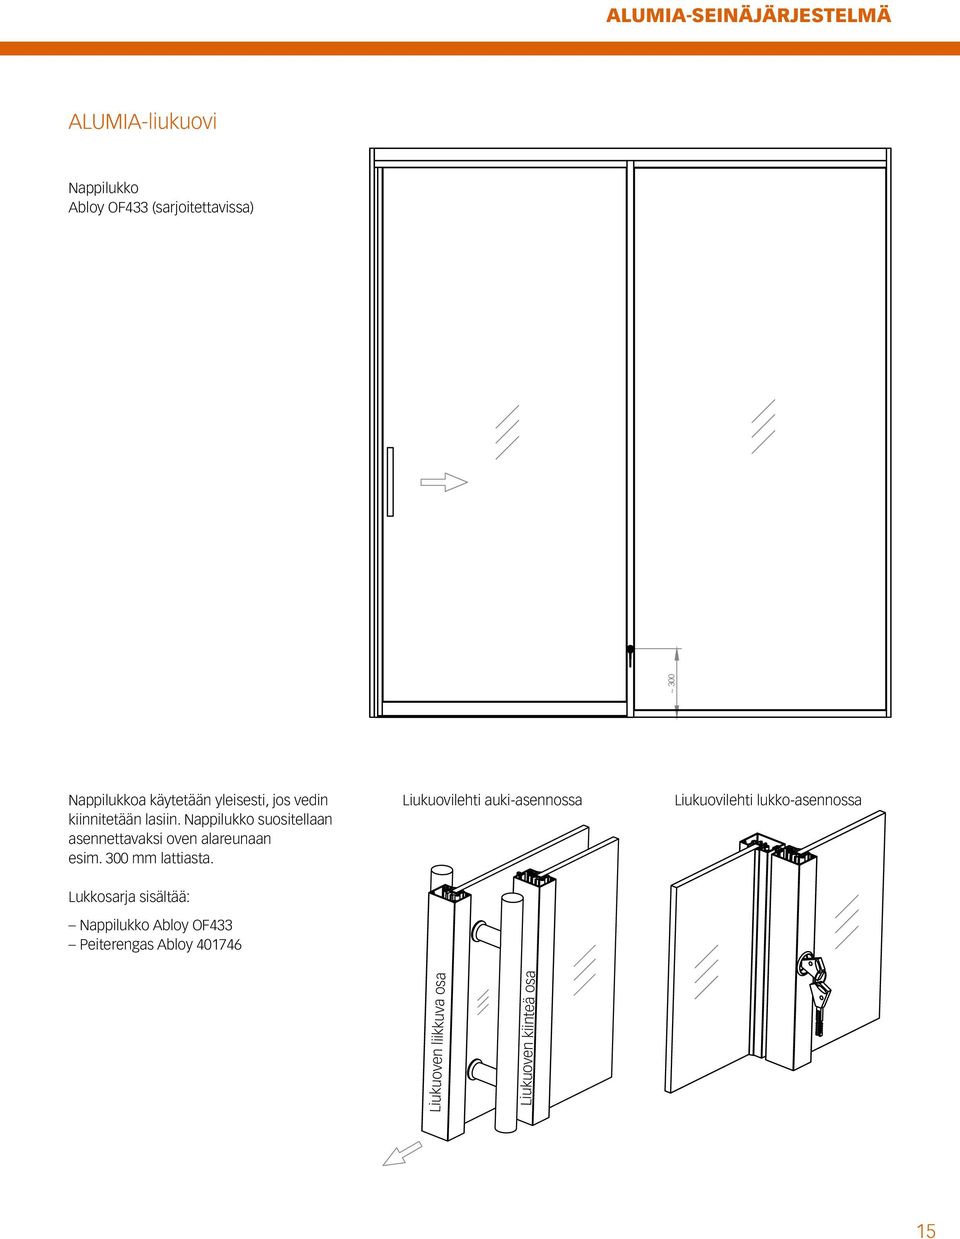 Nappilukko suositellaan asennettavaksi oven alareunaan esim. 300 mm lattiasta.